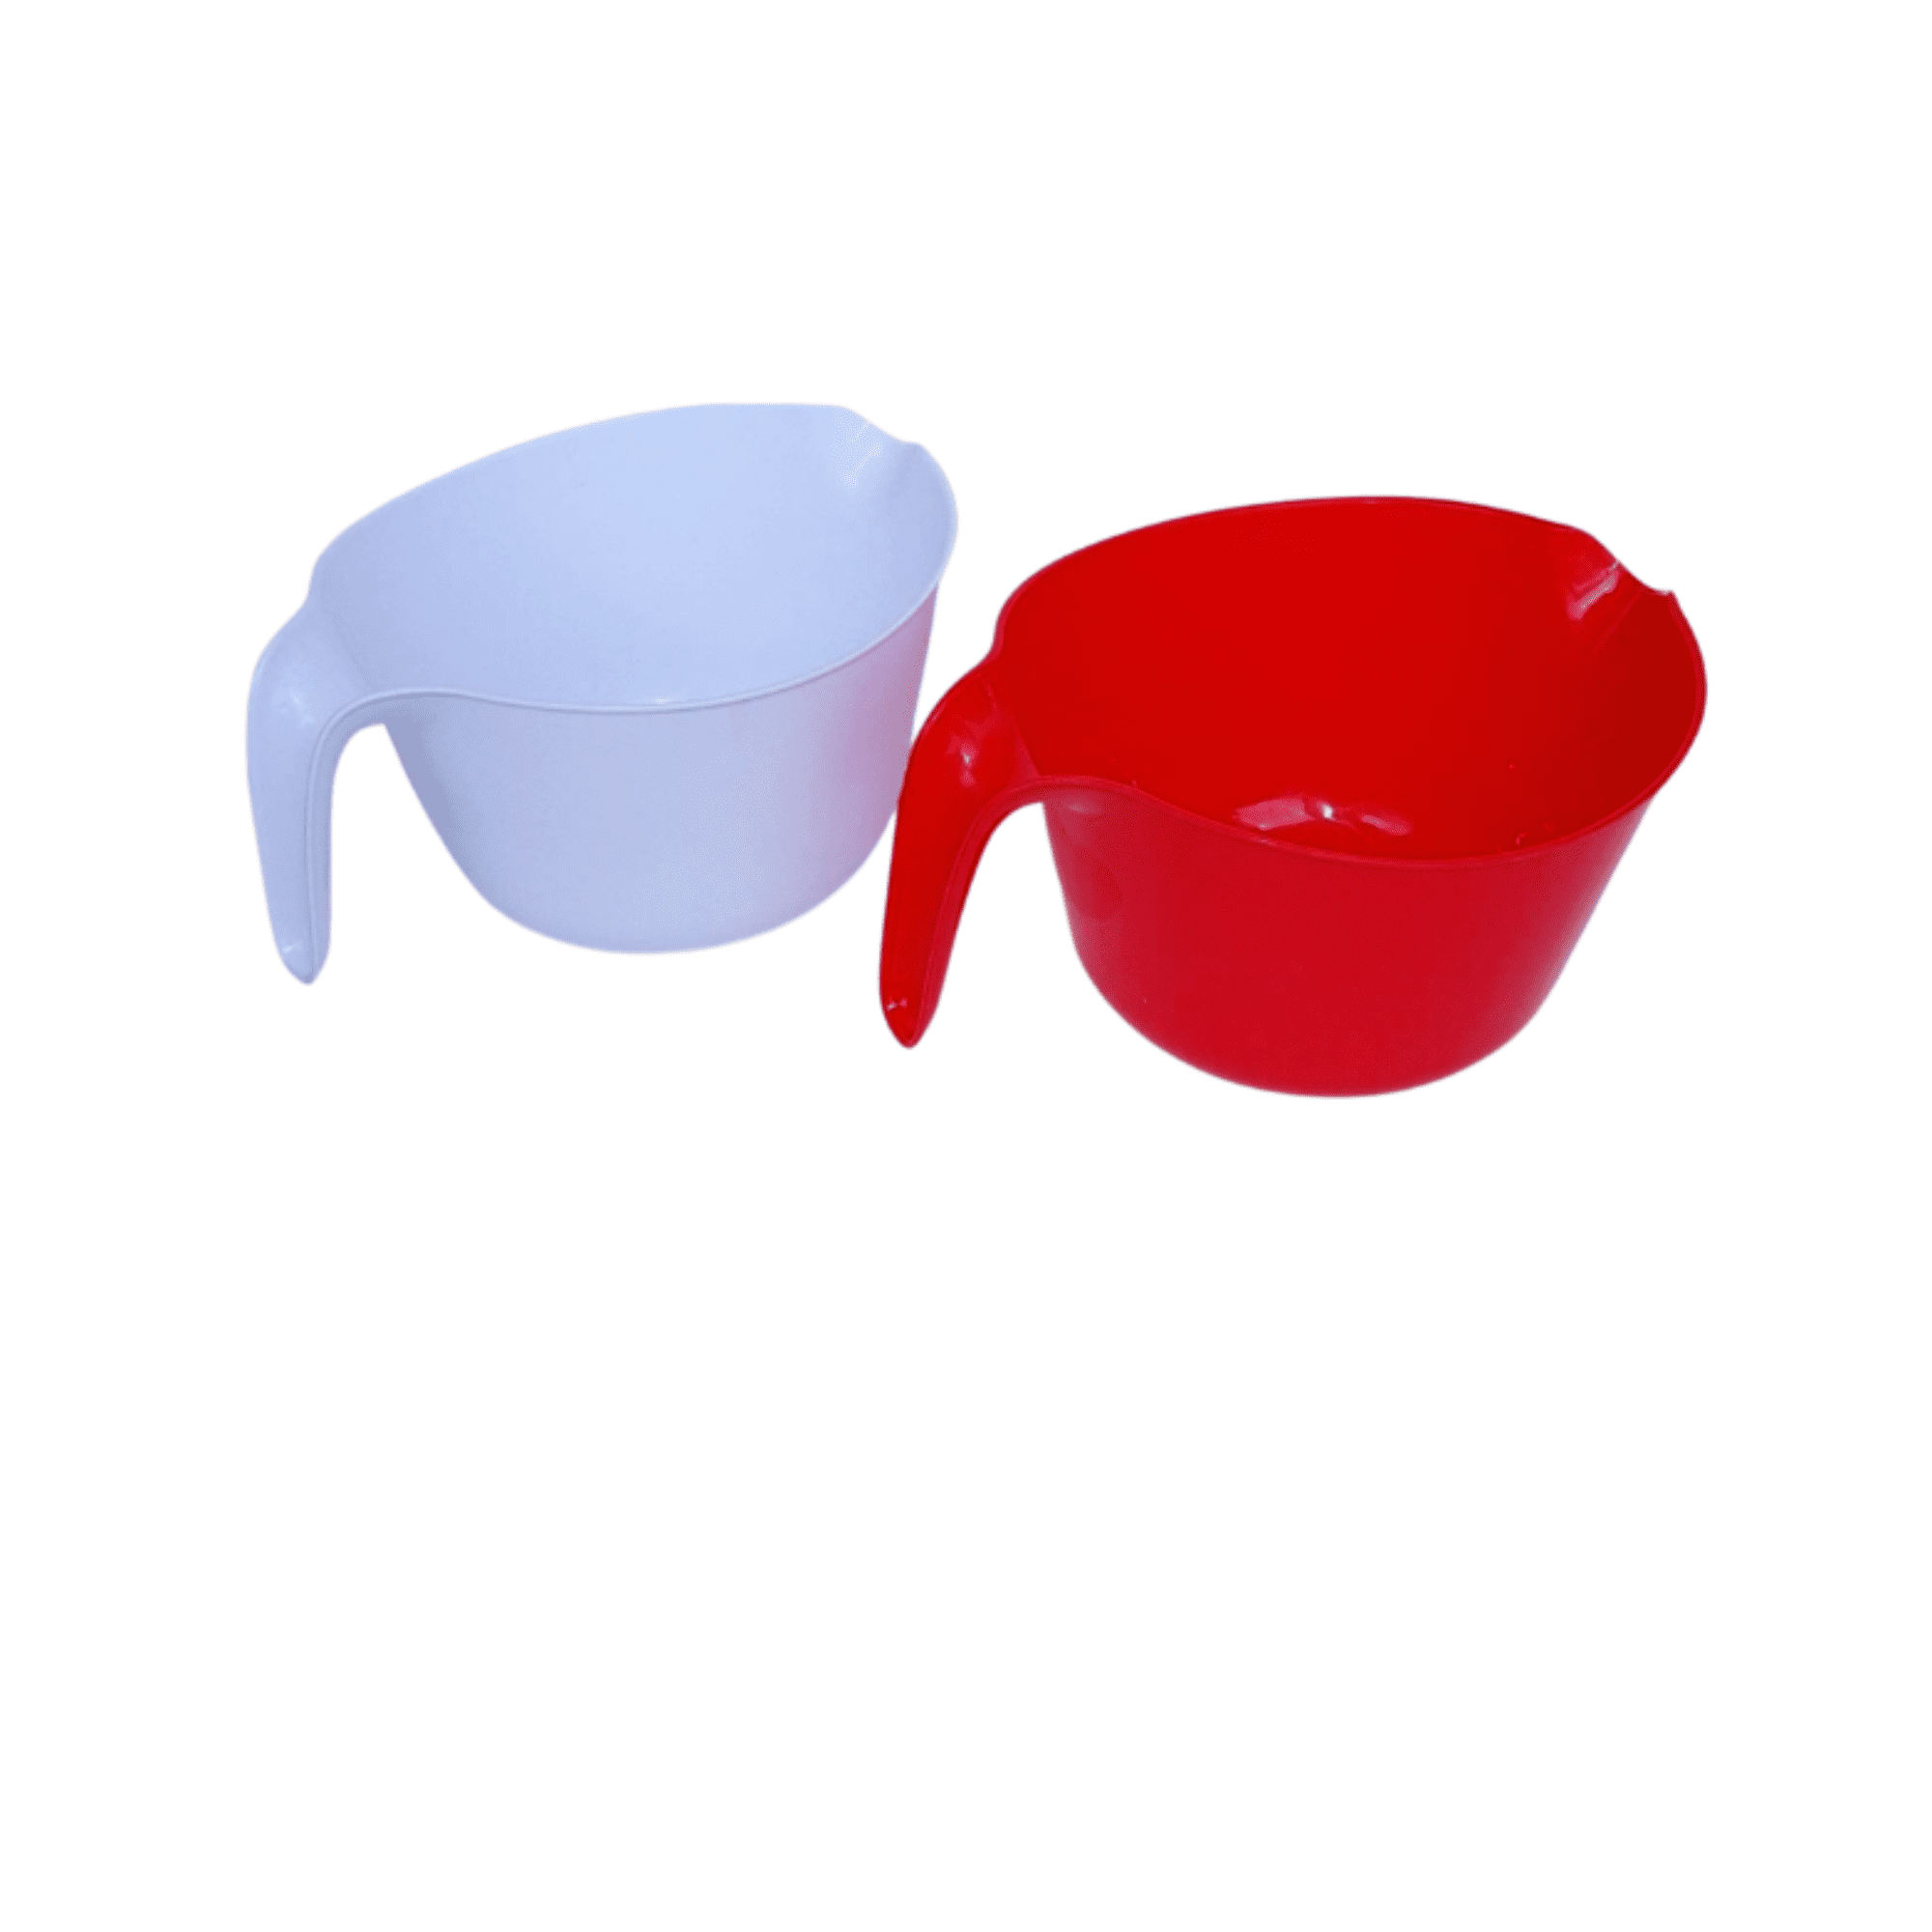 https://i5.walmartimages.com/seo/Plastic-Mixing-Bowls-Sets-Handles-2-5-Qt-Large-Lightweight-Pourable-Bowl-Red-White-Handle-Pour-Spout-Cups-Kitchen-Cooking-Baking-Supplies-Set-2_fcb704c4-2e93-4a84-95a0-67cc88e65328.cdcfa4d2cebfd66b4494499e47ebc31d.png